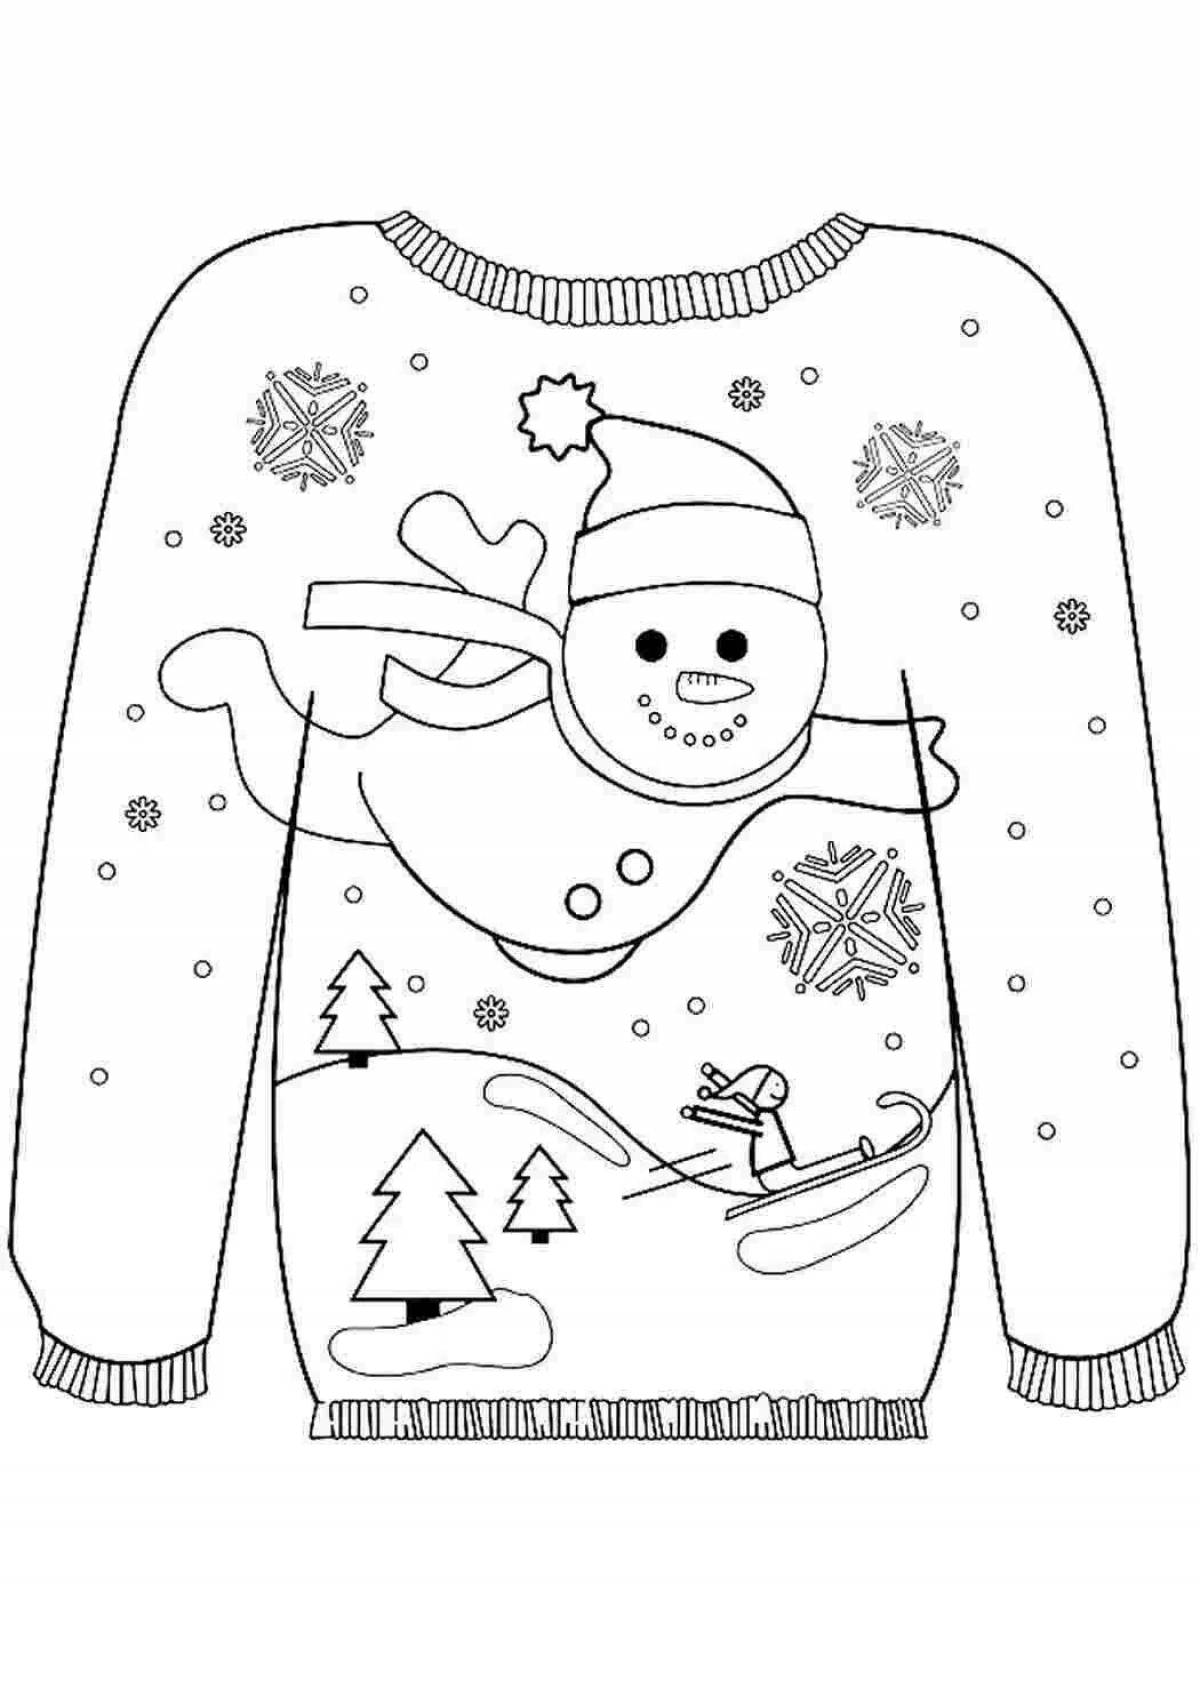 Выдающаяся страница раскраски зимней одежды для детей 5-6 лет